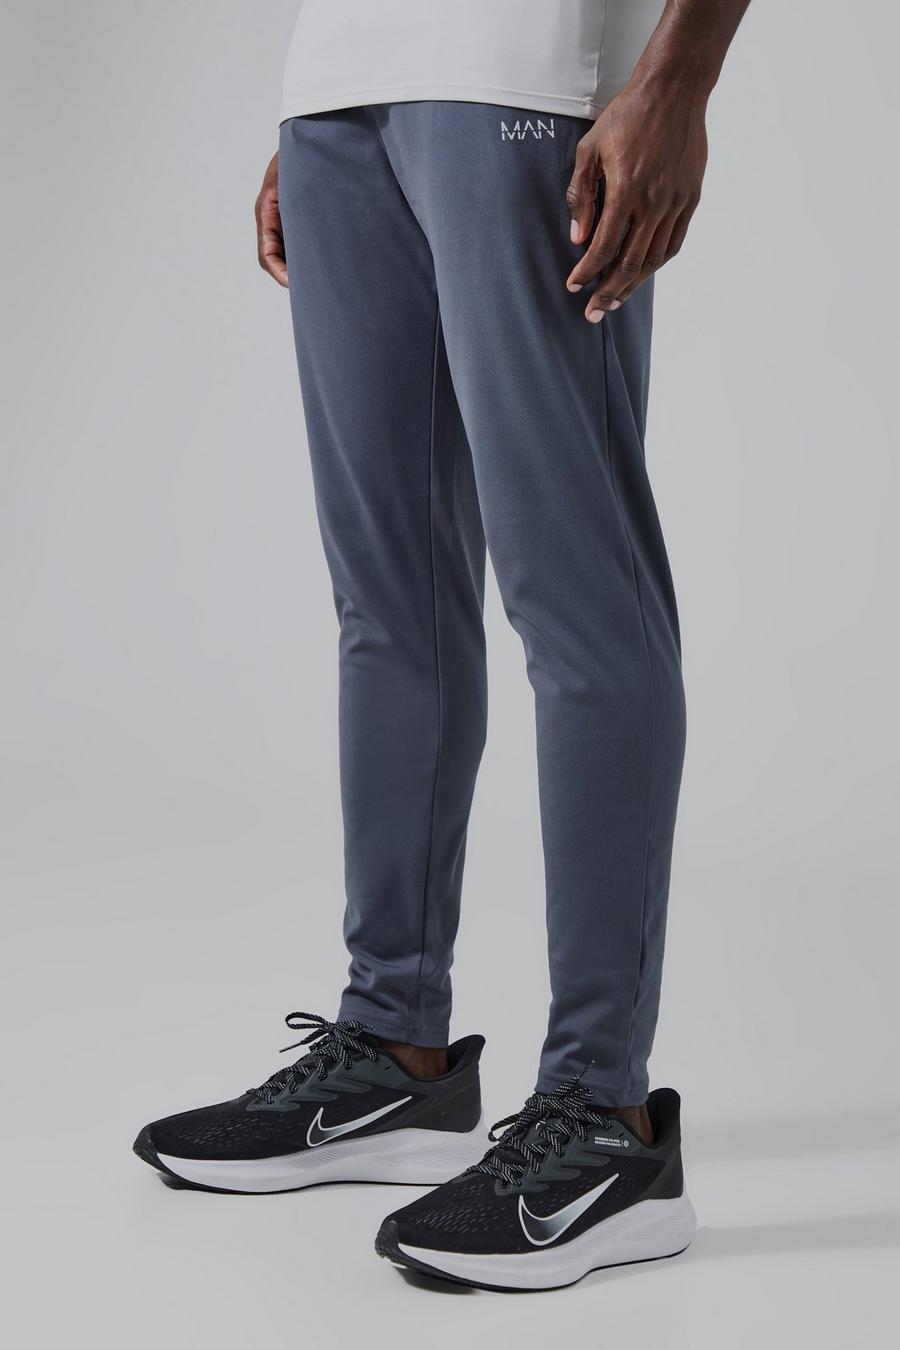 Pantalón deportivo MAN Active súper flexible, Charcoal